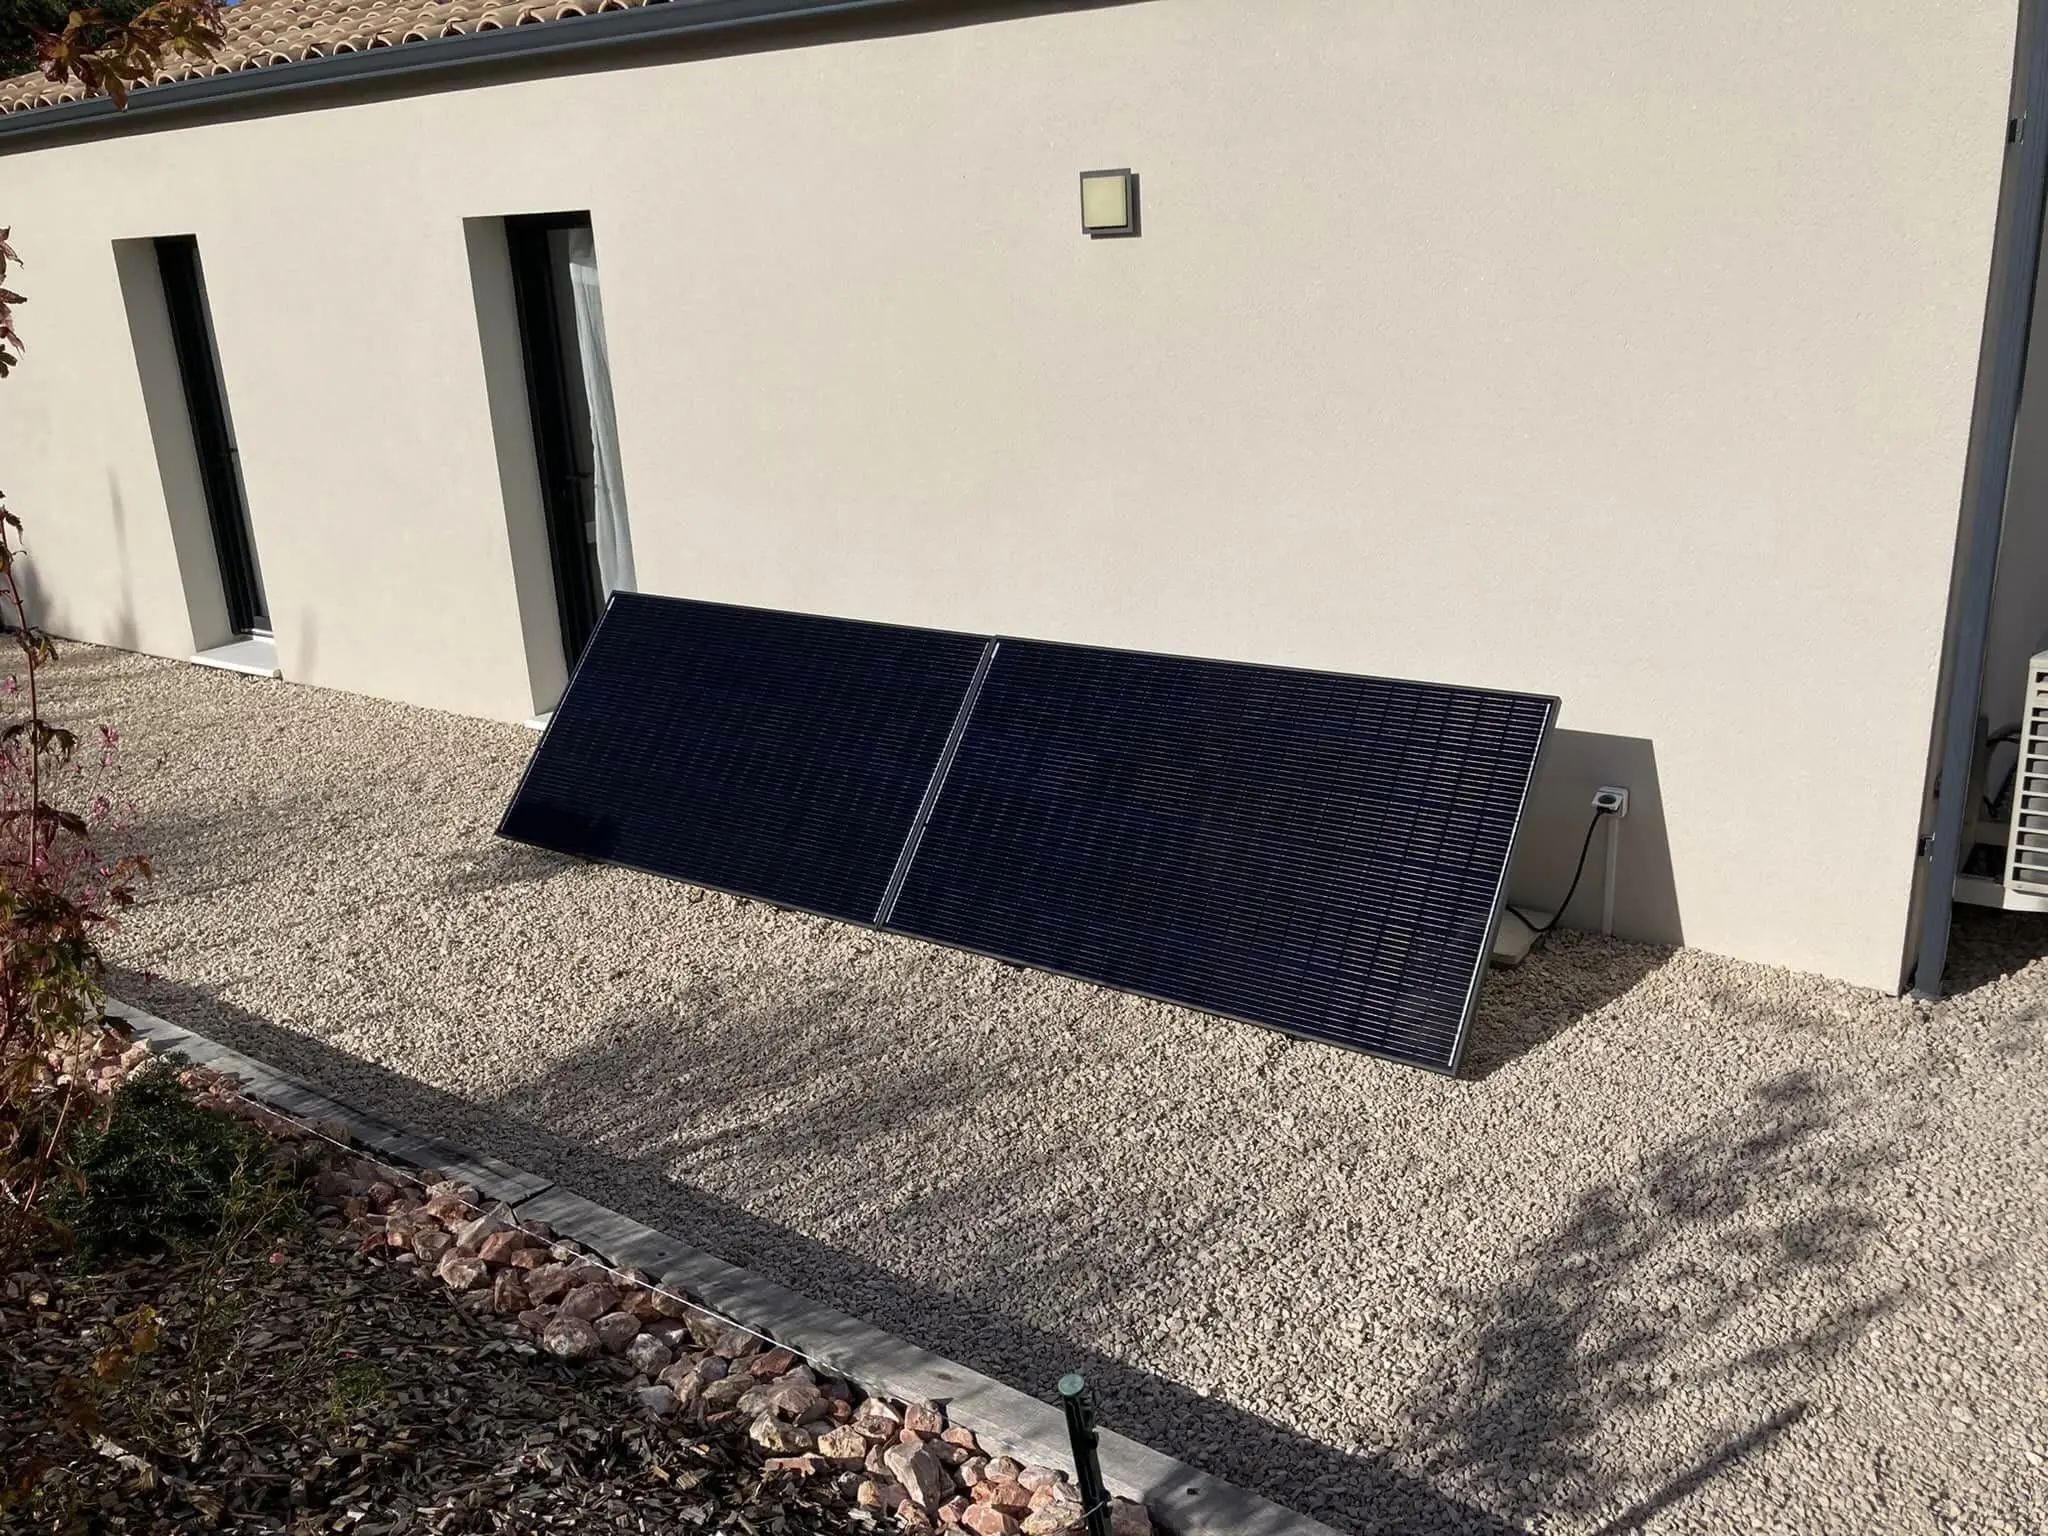 Sunethic : Découvrez la Station Solaire française qui Révolutionne  l'Énergie Renouvelable et le photovoltaïque